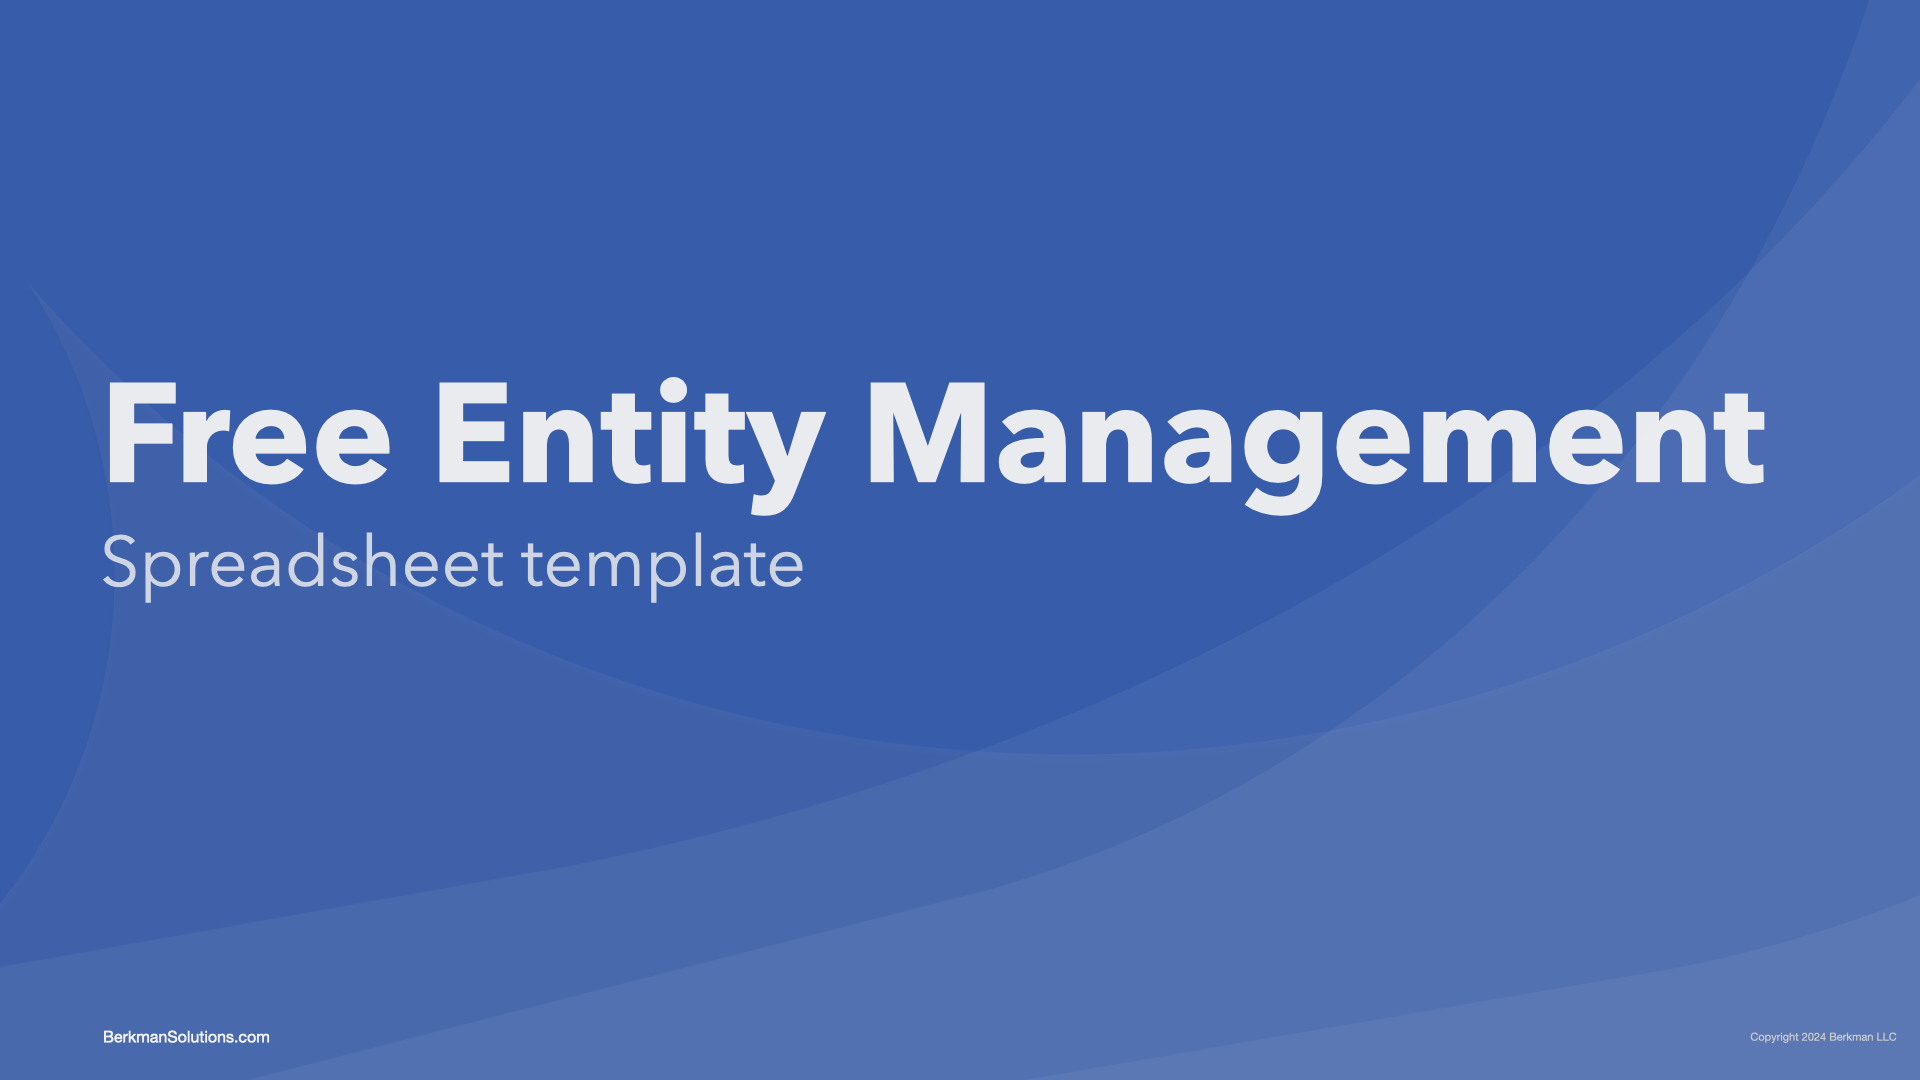 Free Entity Management Spreadsheet